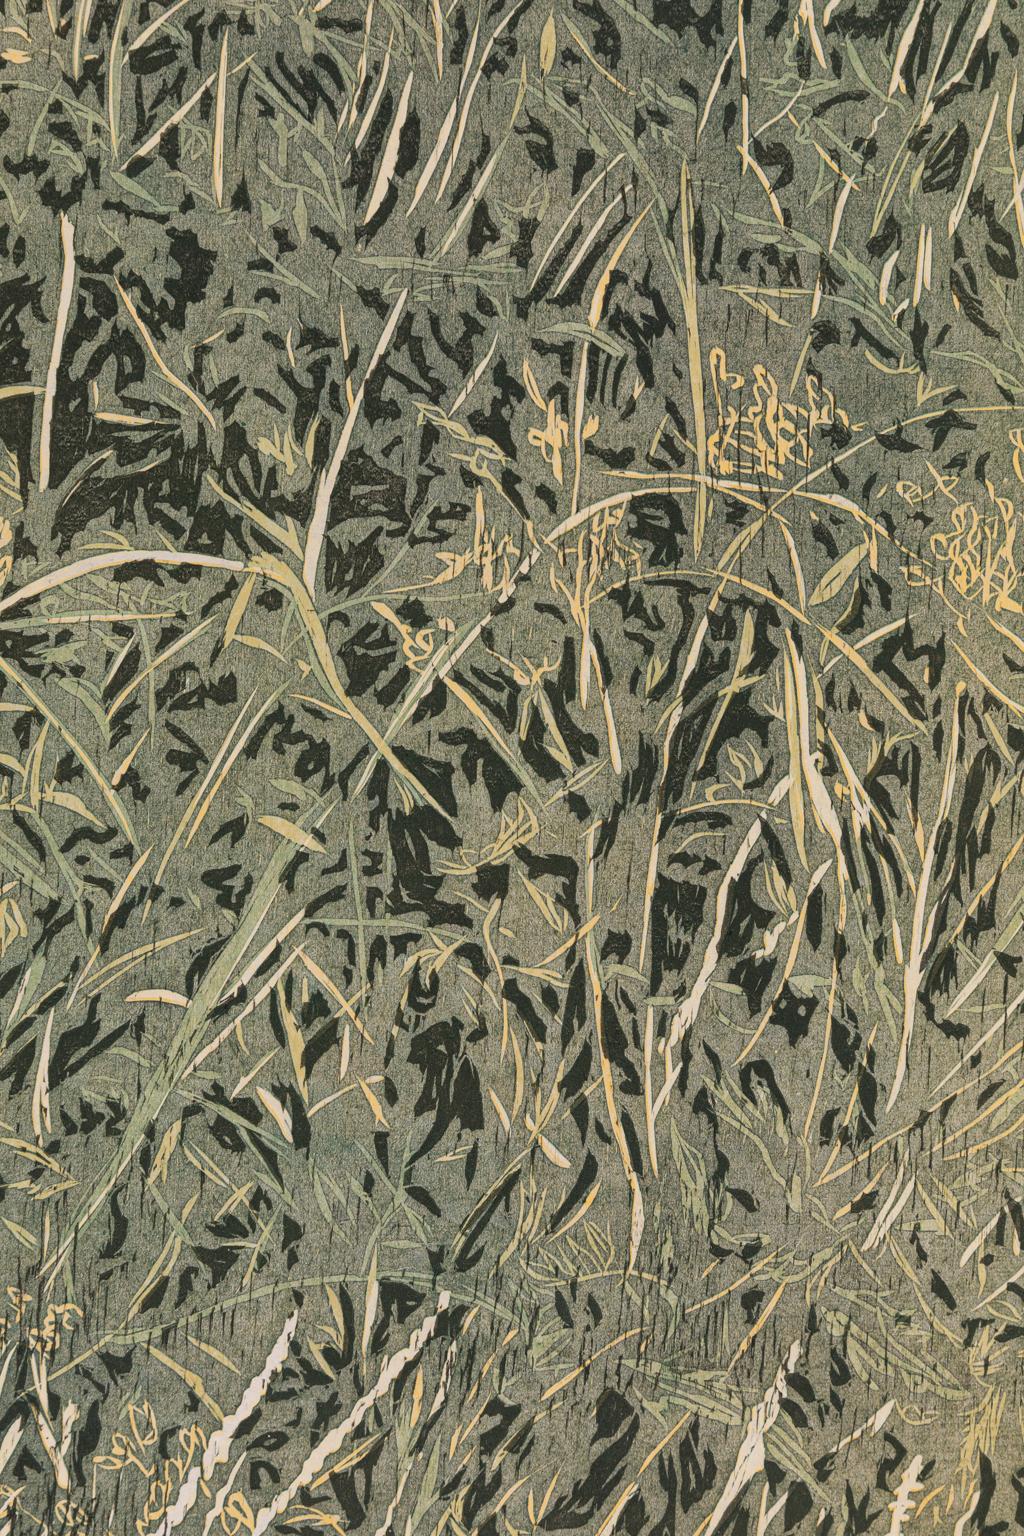 linocut grass